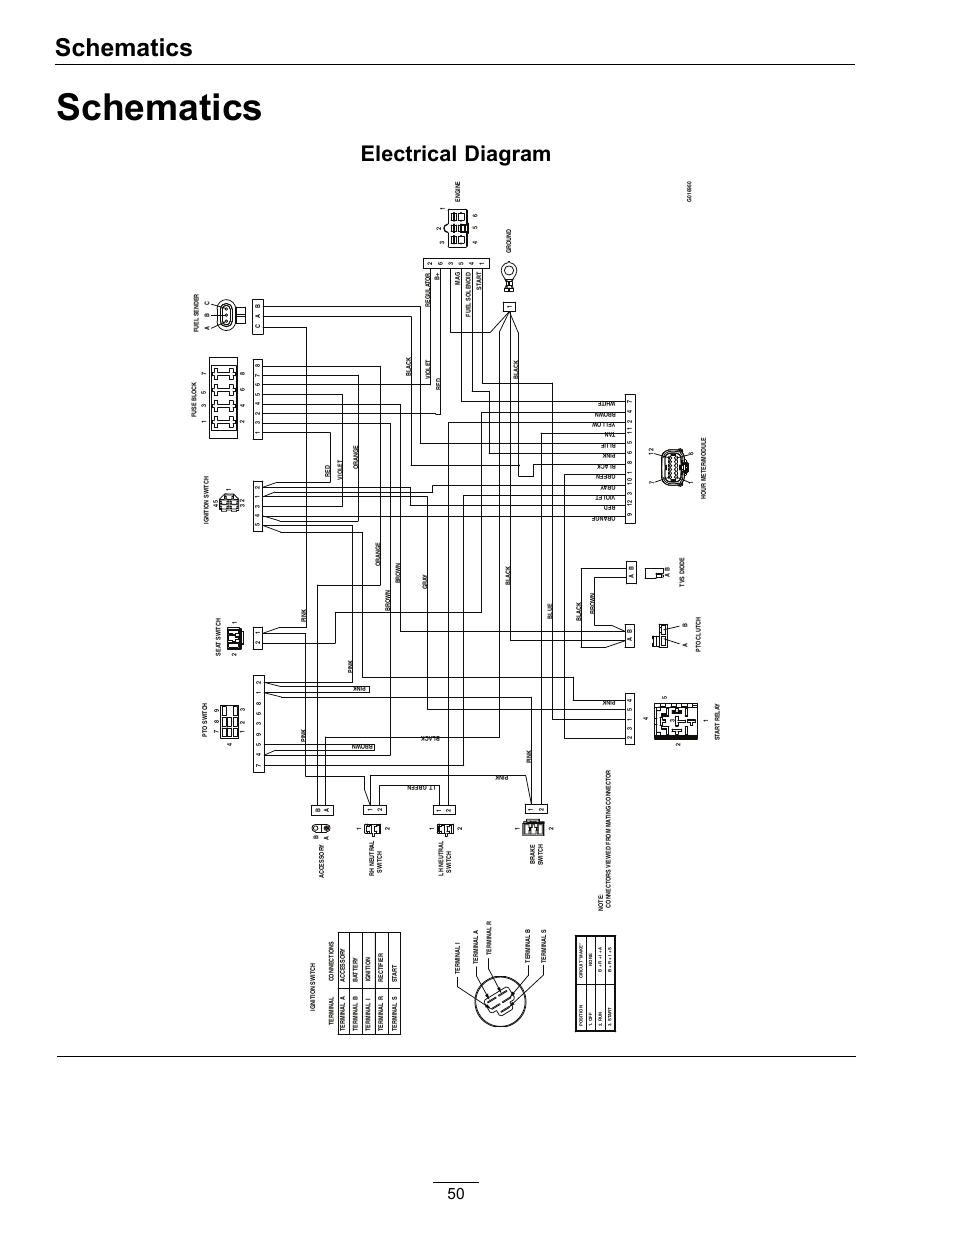 heil heat pump wiring diagram